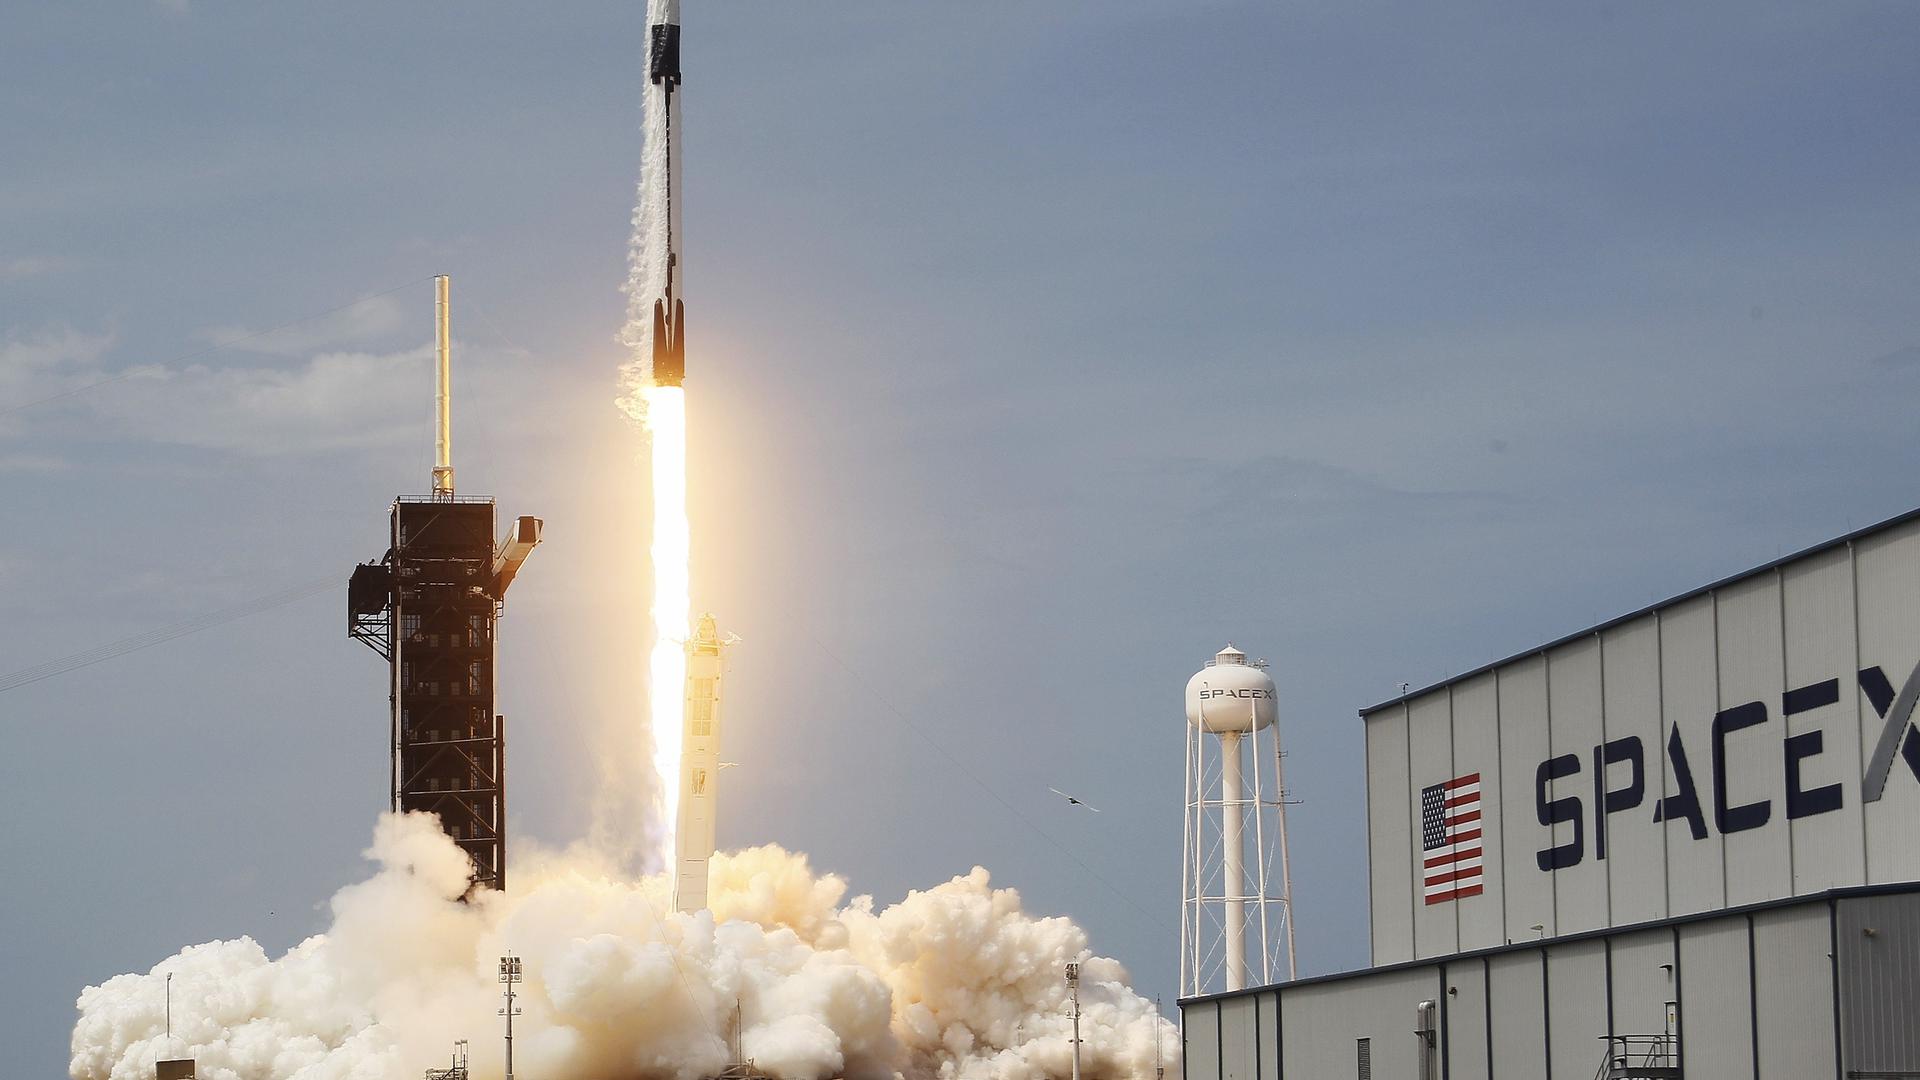 La fusée construite par SpaceX a décollé sans encombre, dans un ciel finalement largement bleu, samedi à 15h22 (21h22 au Luxembourg) du centre spatial Kennedy